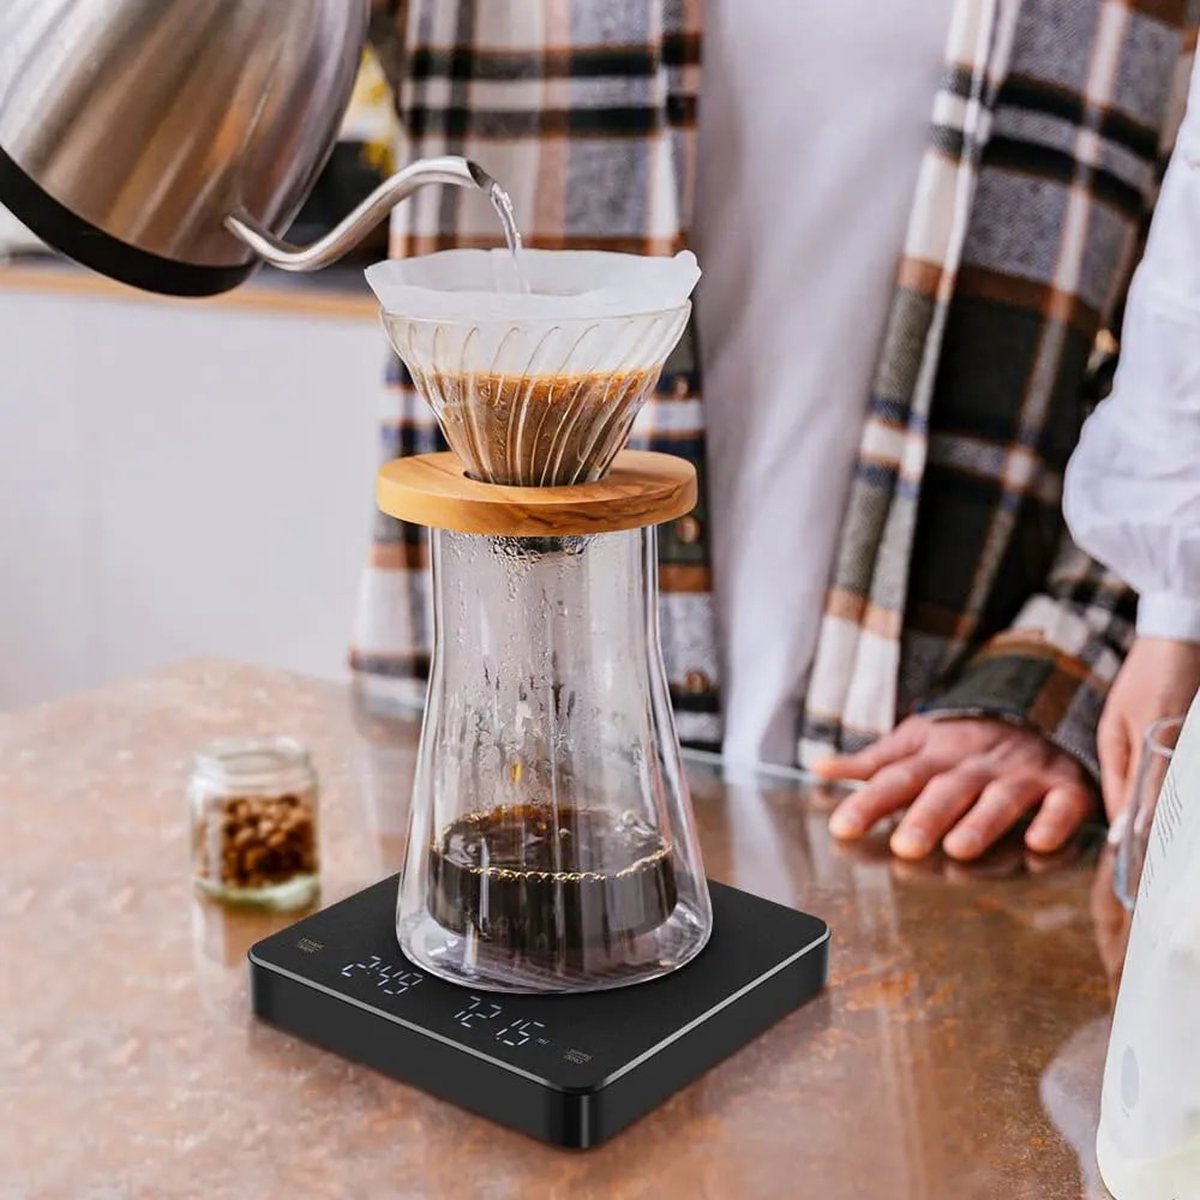 Digitale Koffieweegschaal Met Timer Led Scherm Espresso Usb 3Kg Max. Met Een Gewicht Van 0.1G Hoge Precisie Maatregelen In Oz/Ml/G Keukenweegschaal